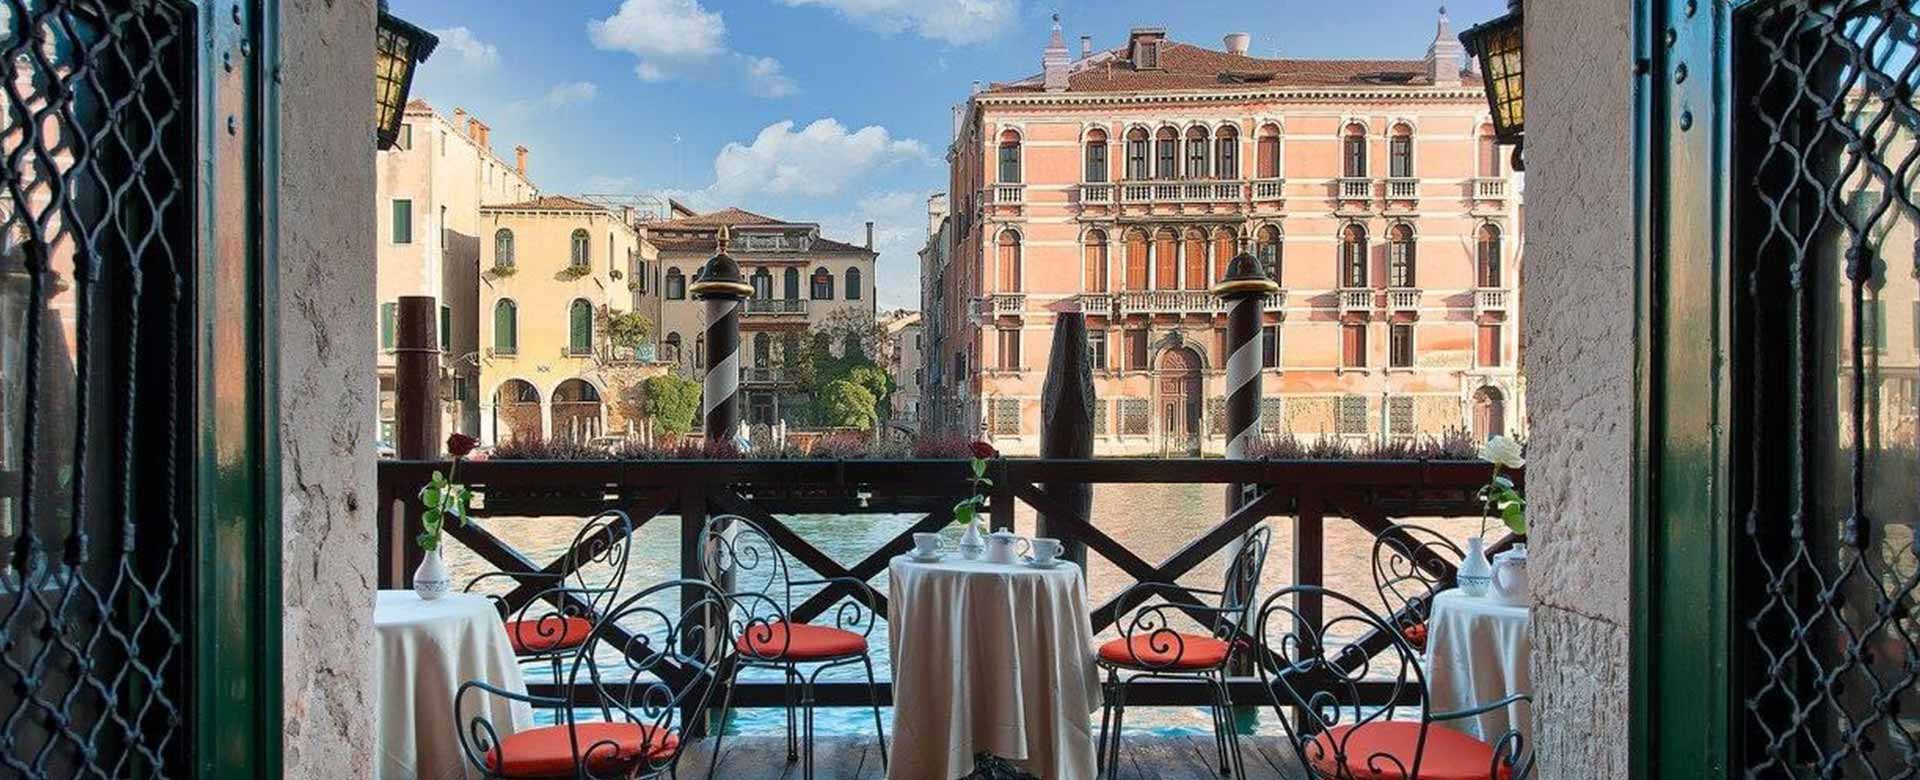 Vista del Canal Grande dall'hotel San Cassiano a Ca' Favretto, Venezia